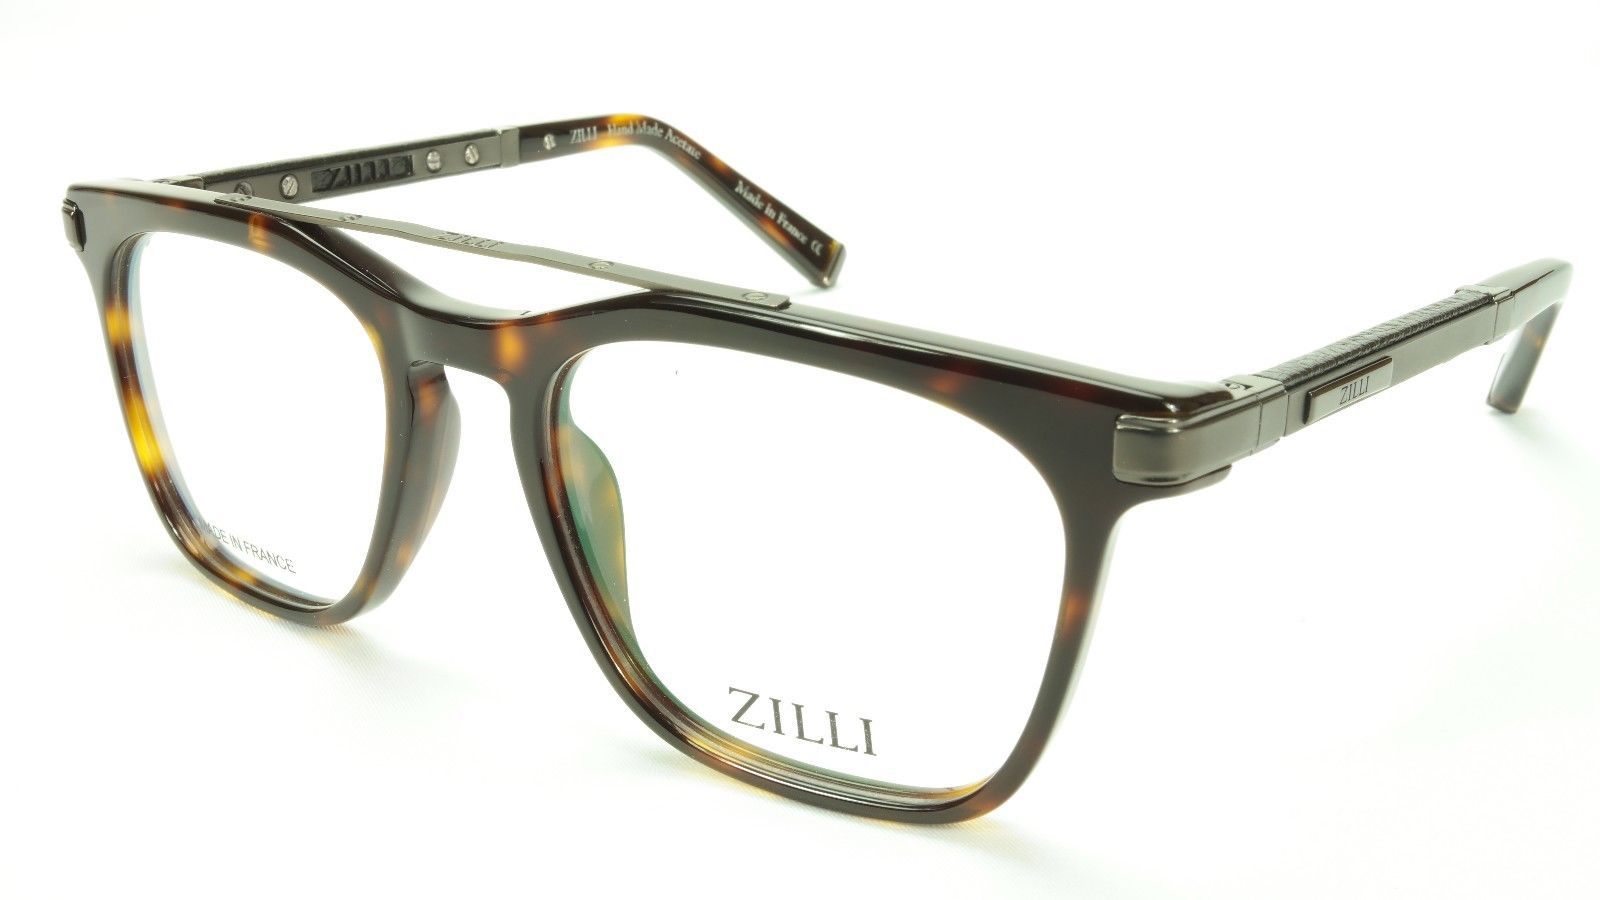 ZILLI Eyeglasses Frame Acetate Leather Titanium France Hand Made ZI 60018 C03 - $1,045.00